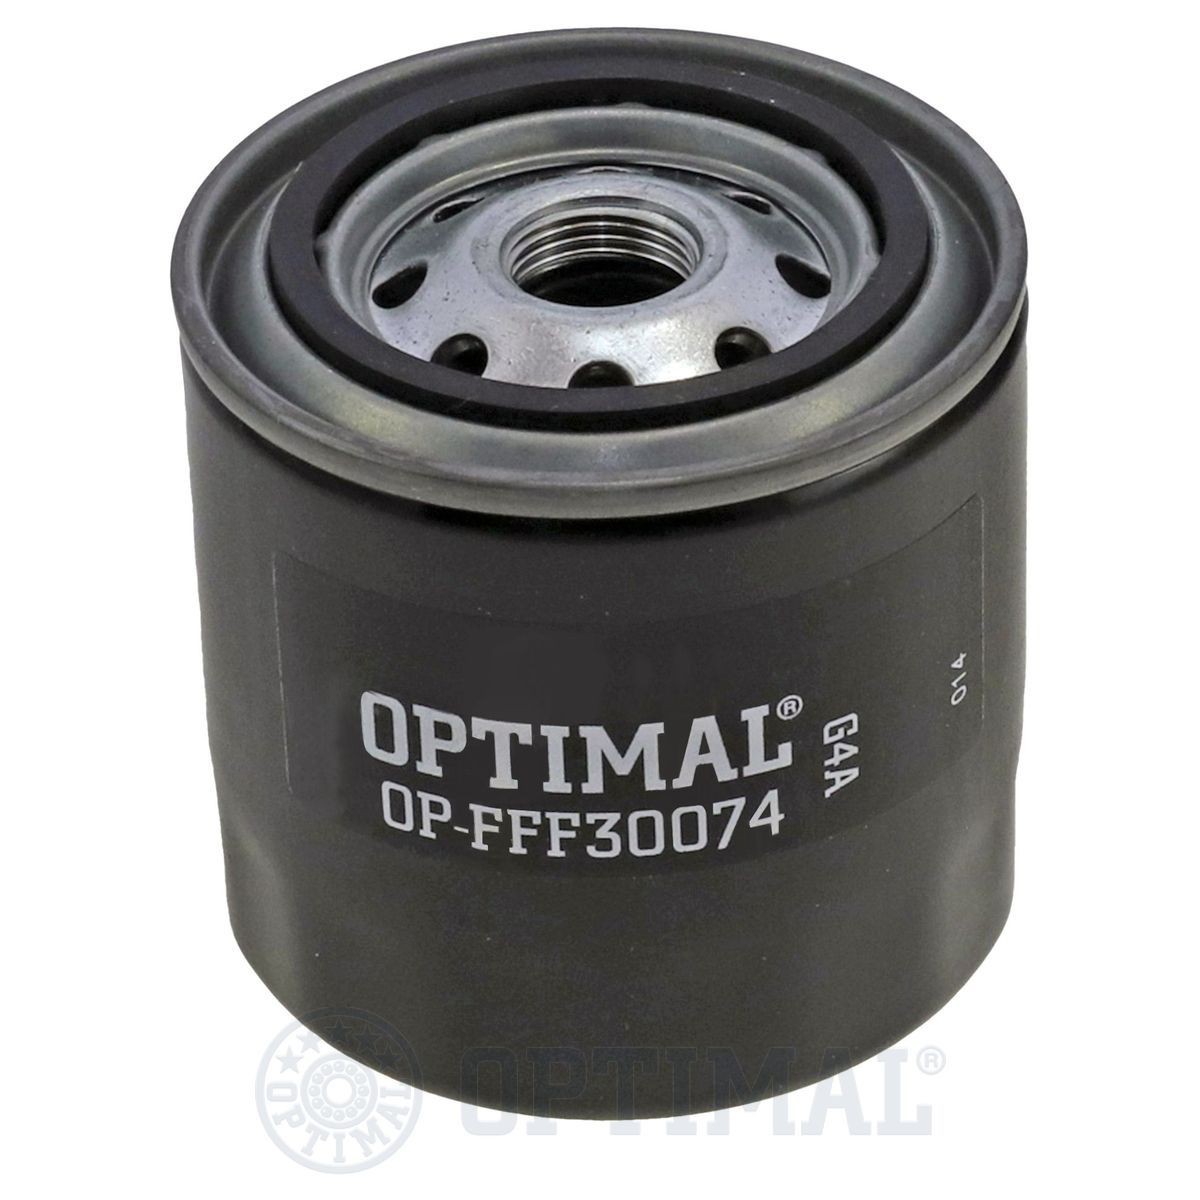 OPTIMAL OP-FFF30074 Fuel filter 13240023